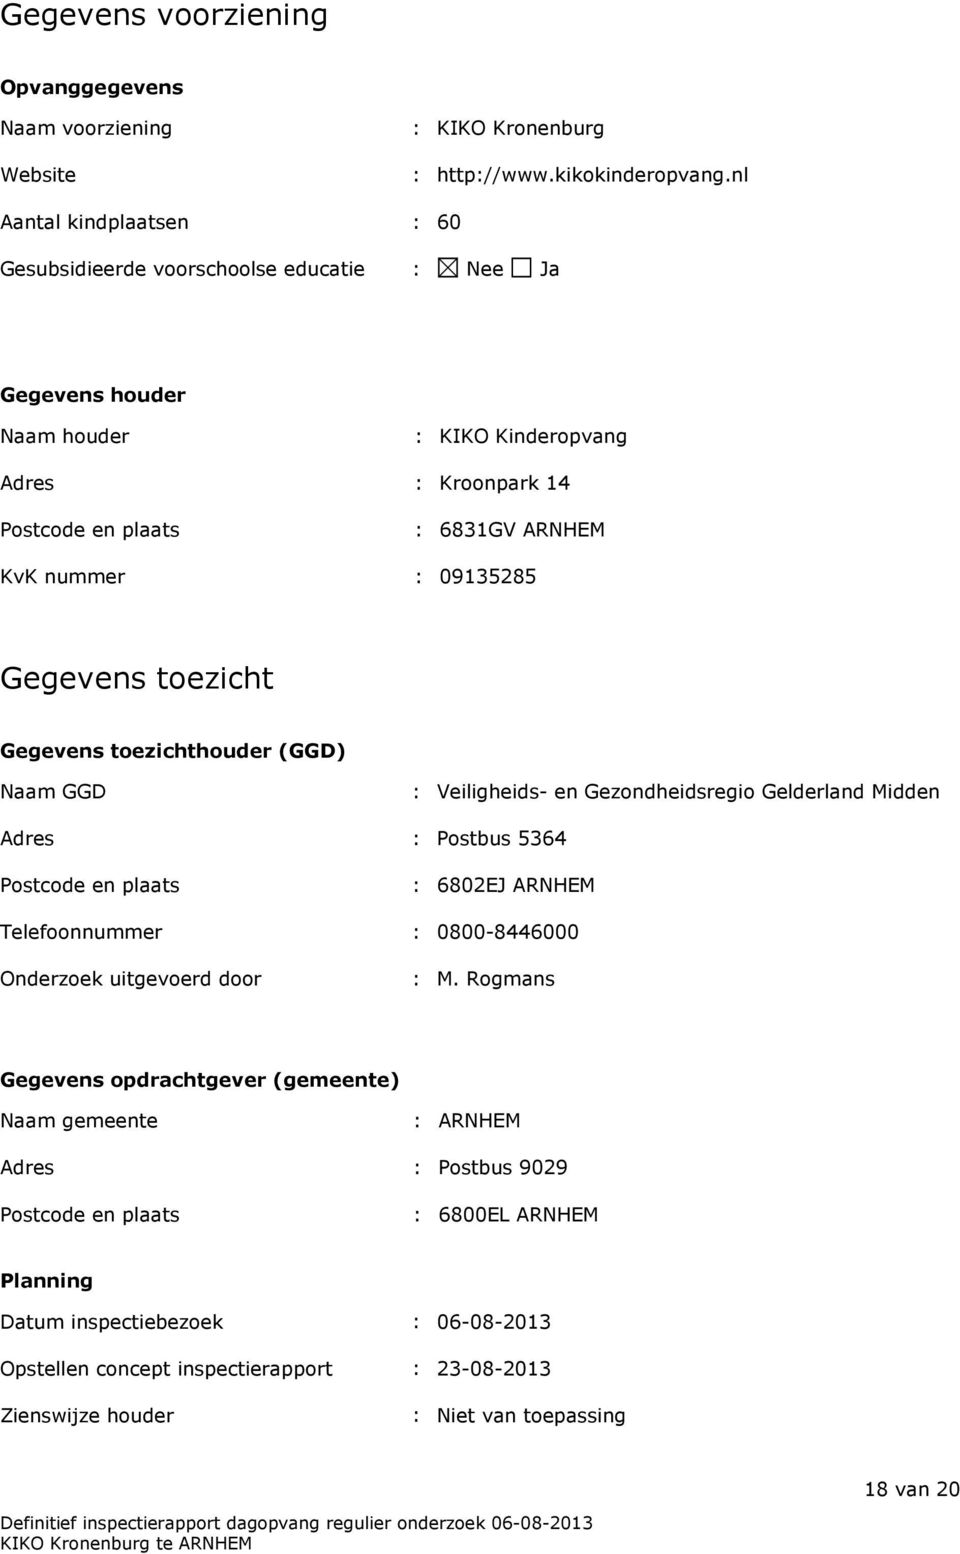 Gegevens toezicht Gegevens toezichthouder (GGD) Naam GGD : Veiligheids- en Gezondheidsregio Gelderland Midden Adres : Postbus 5364 Postcode en plaats : 6802EJ ARNHEM Telefoonnummer : 0800-8446000